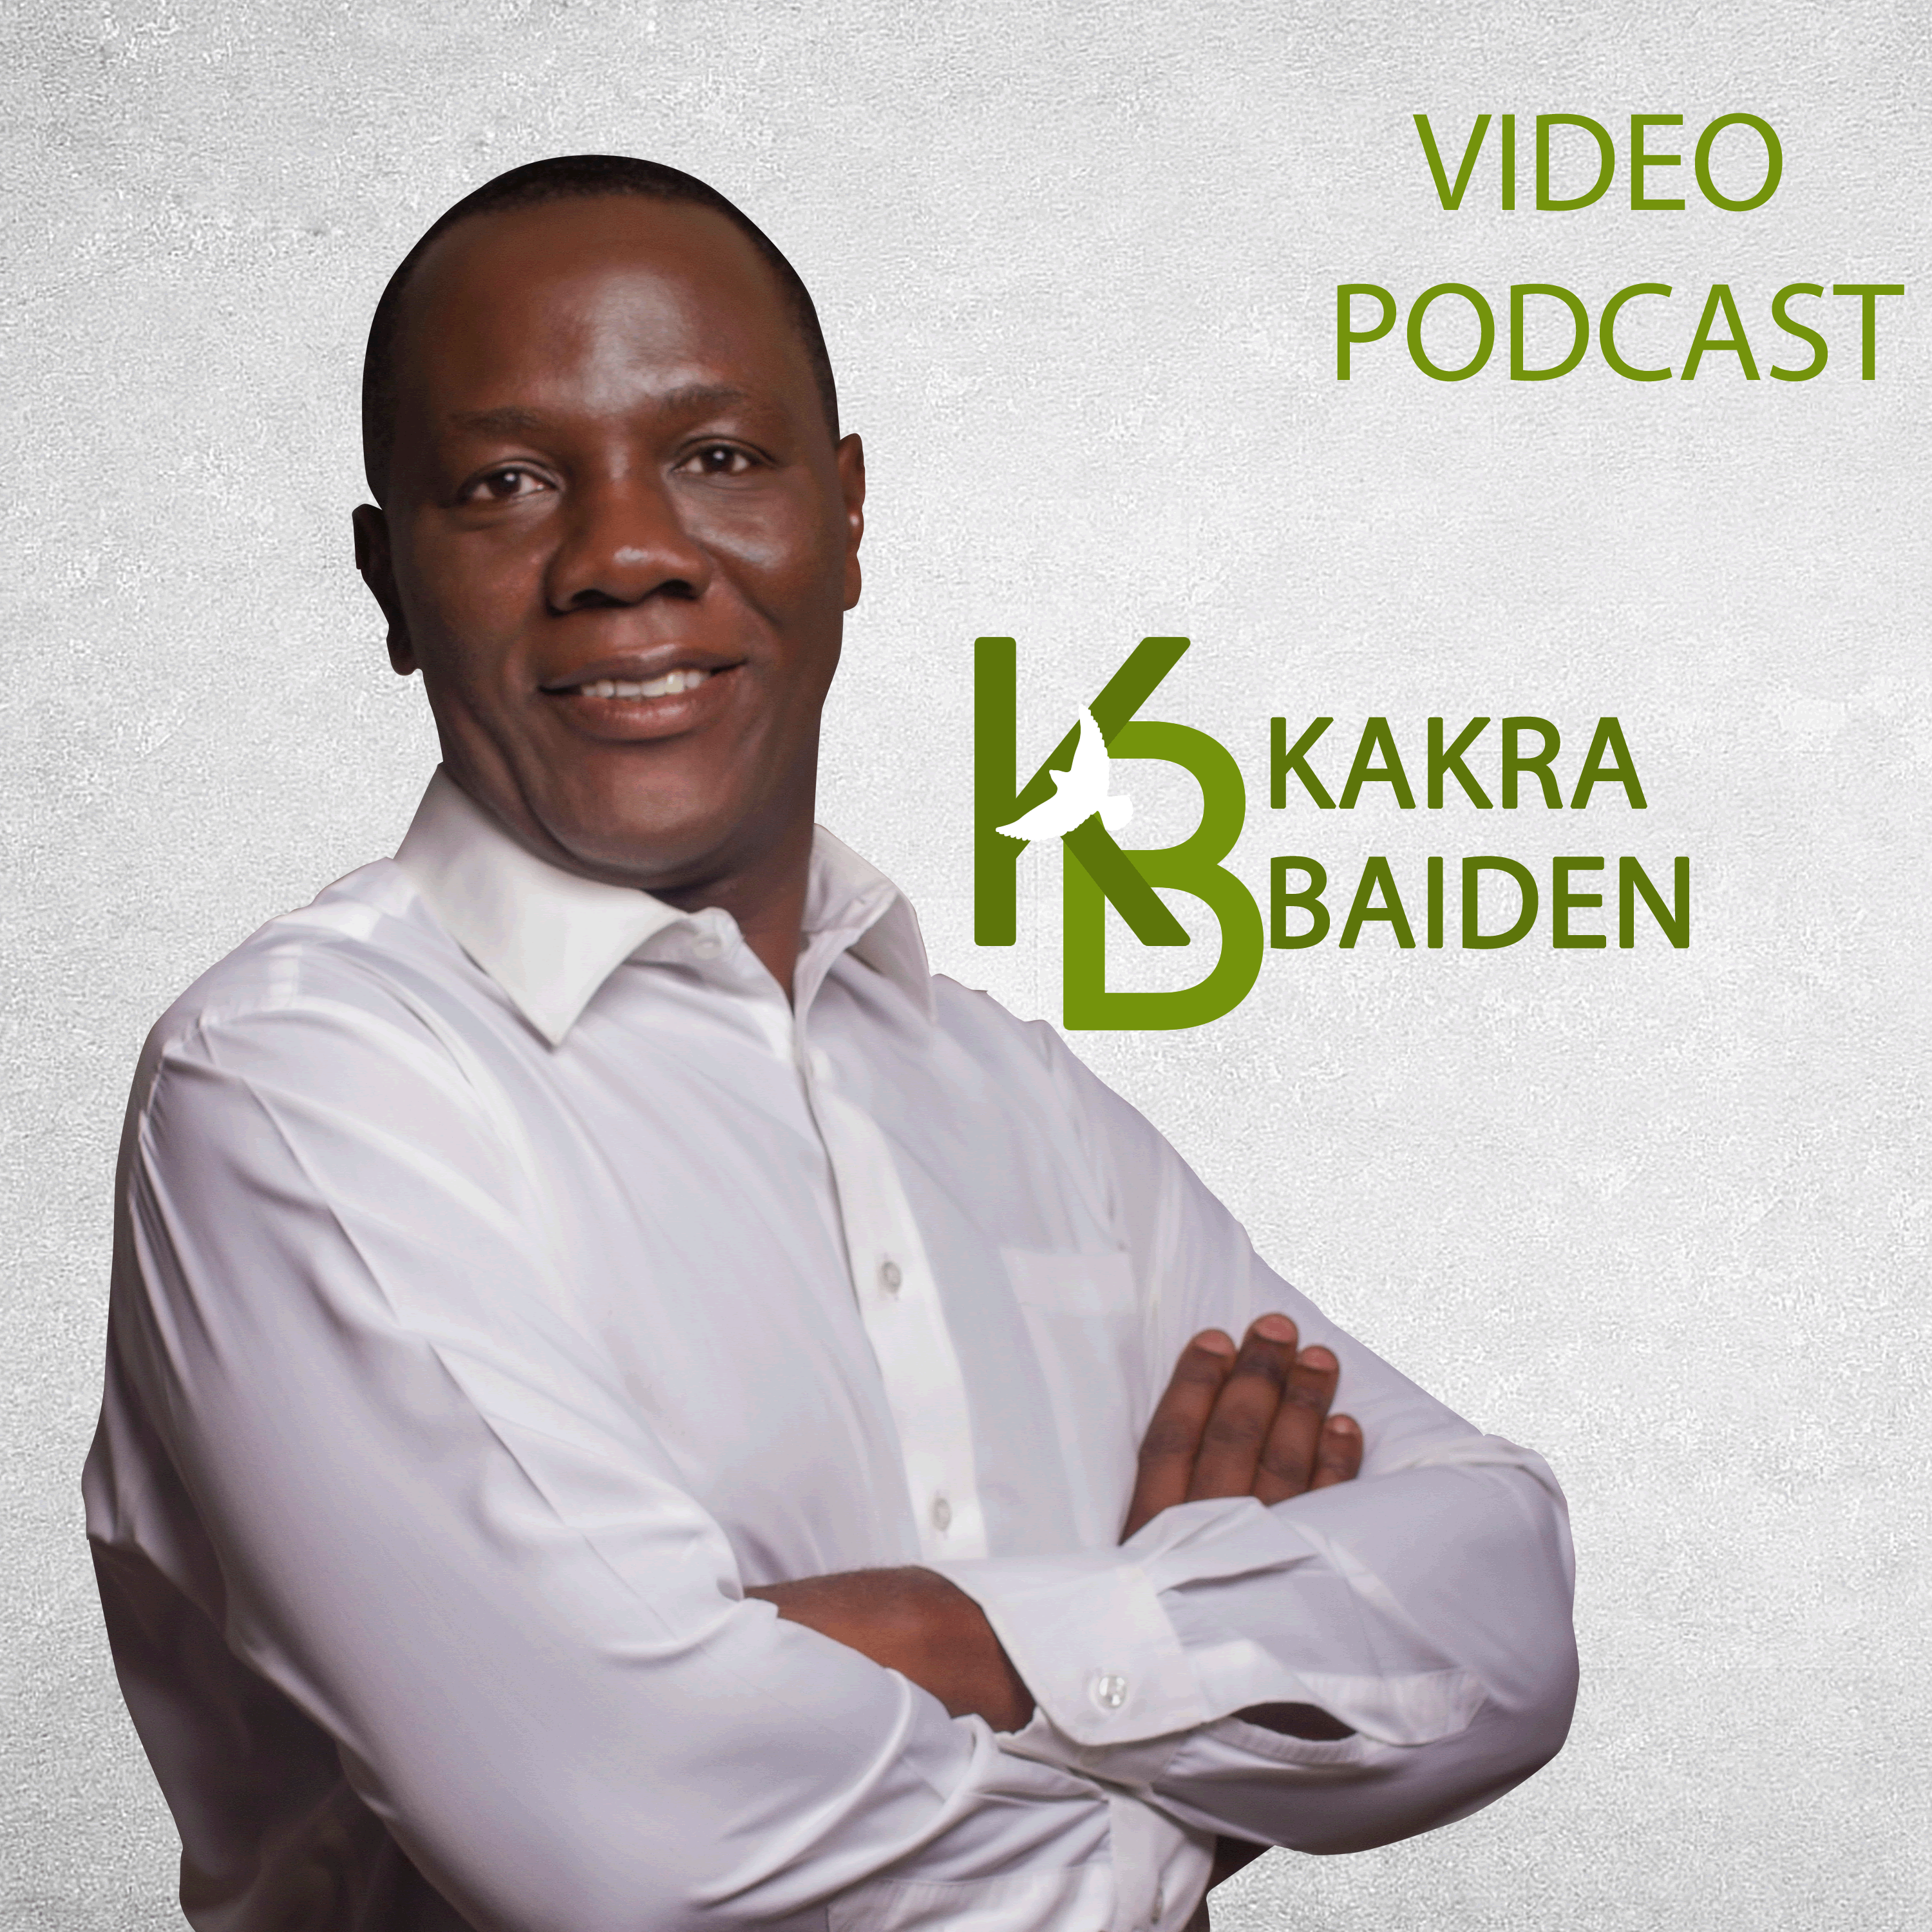 Kakra Baiden Video Podcast on Jamit